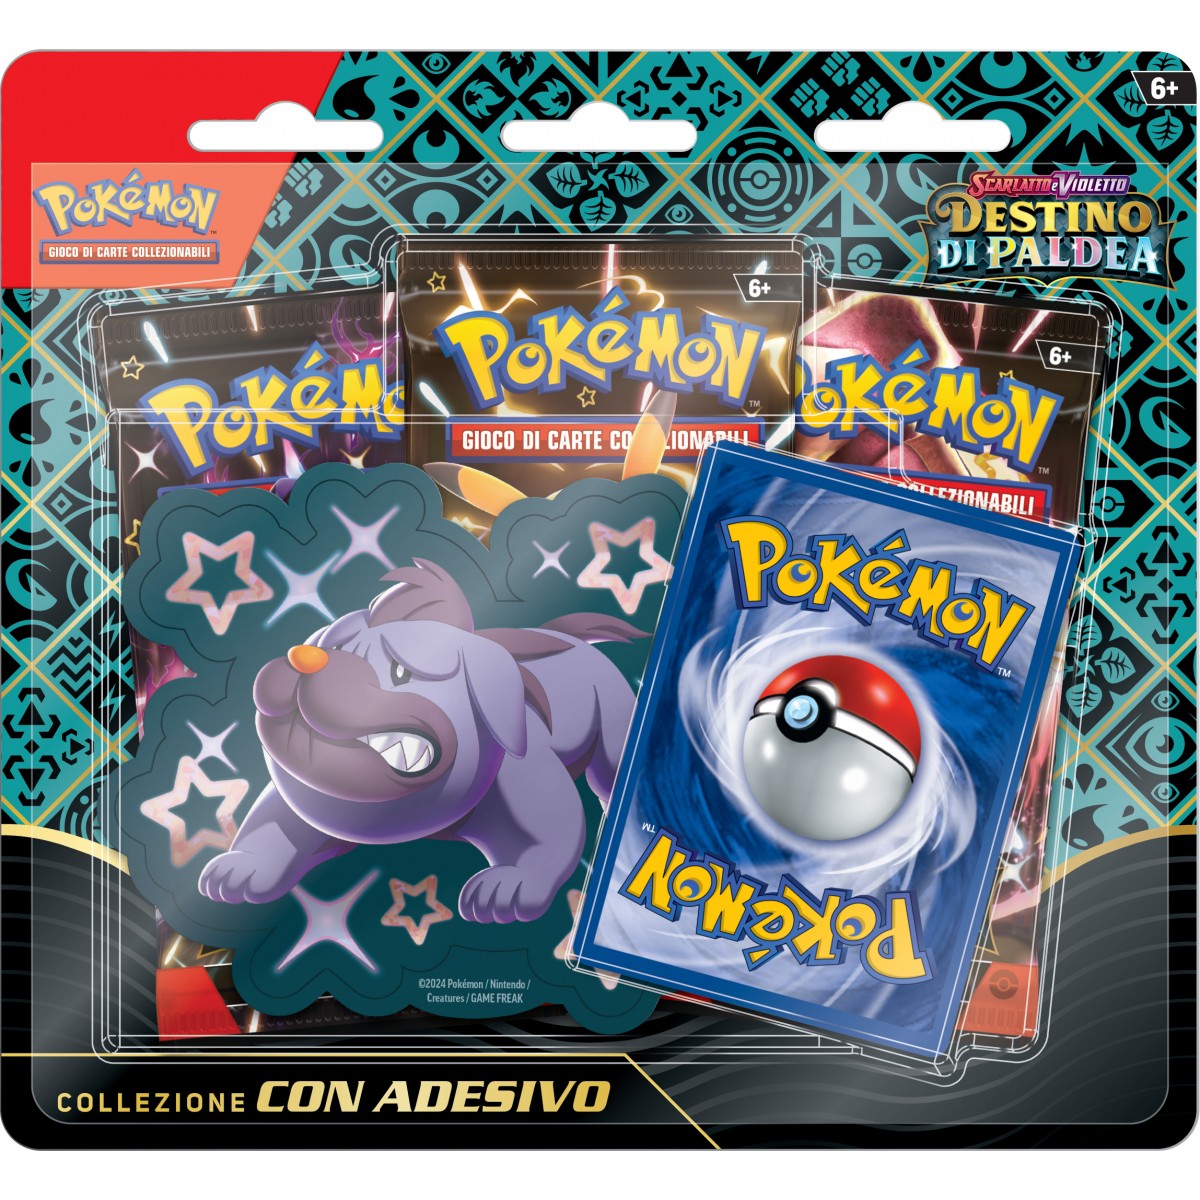 Pokémon Scarlatto & Violetto Destino di Paldea Collezione Maschiff con adesivo (IT)